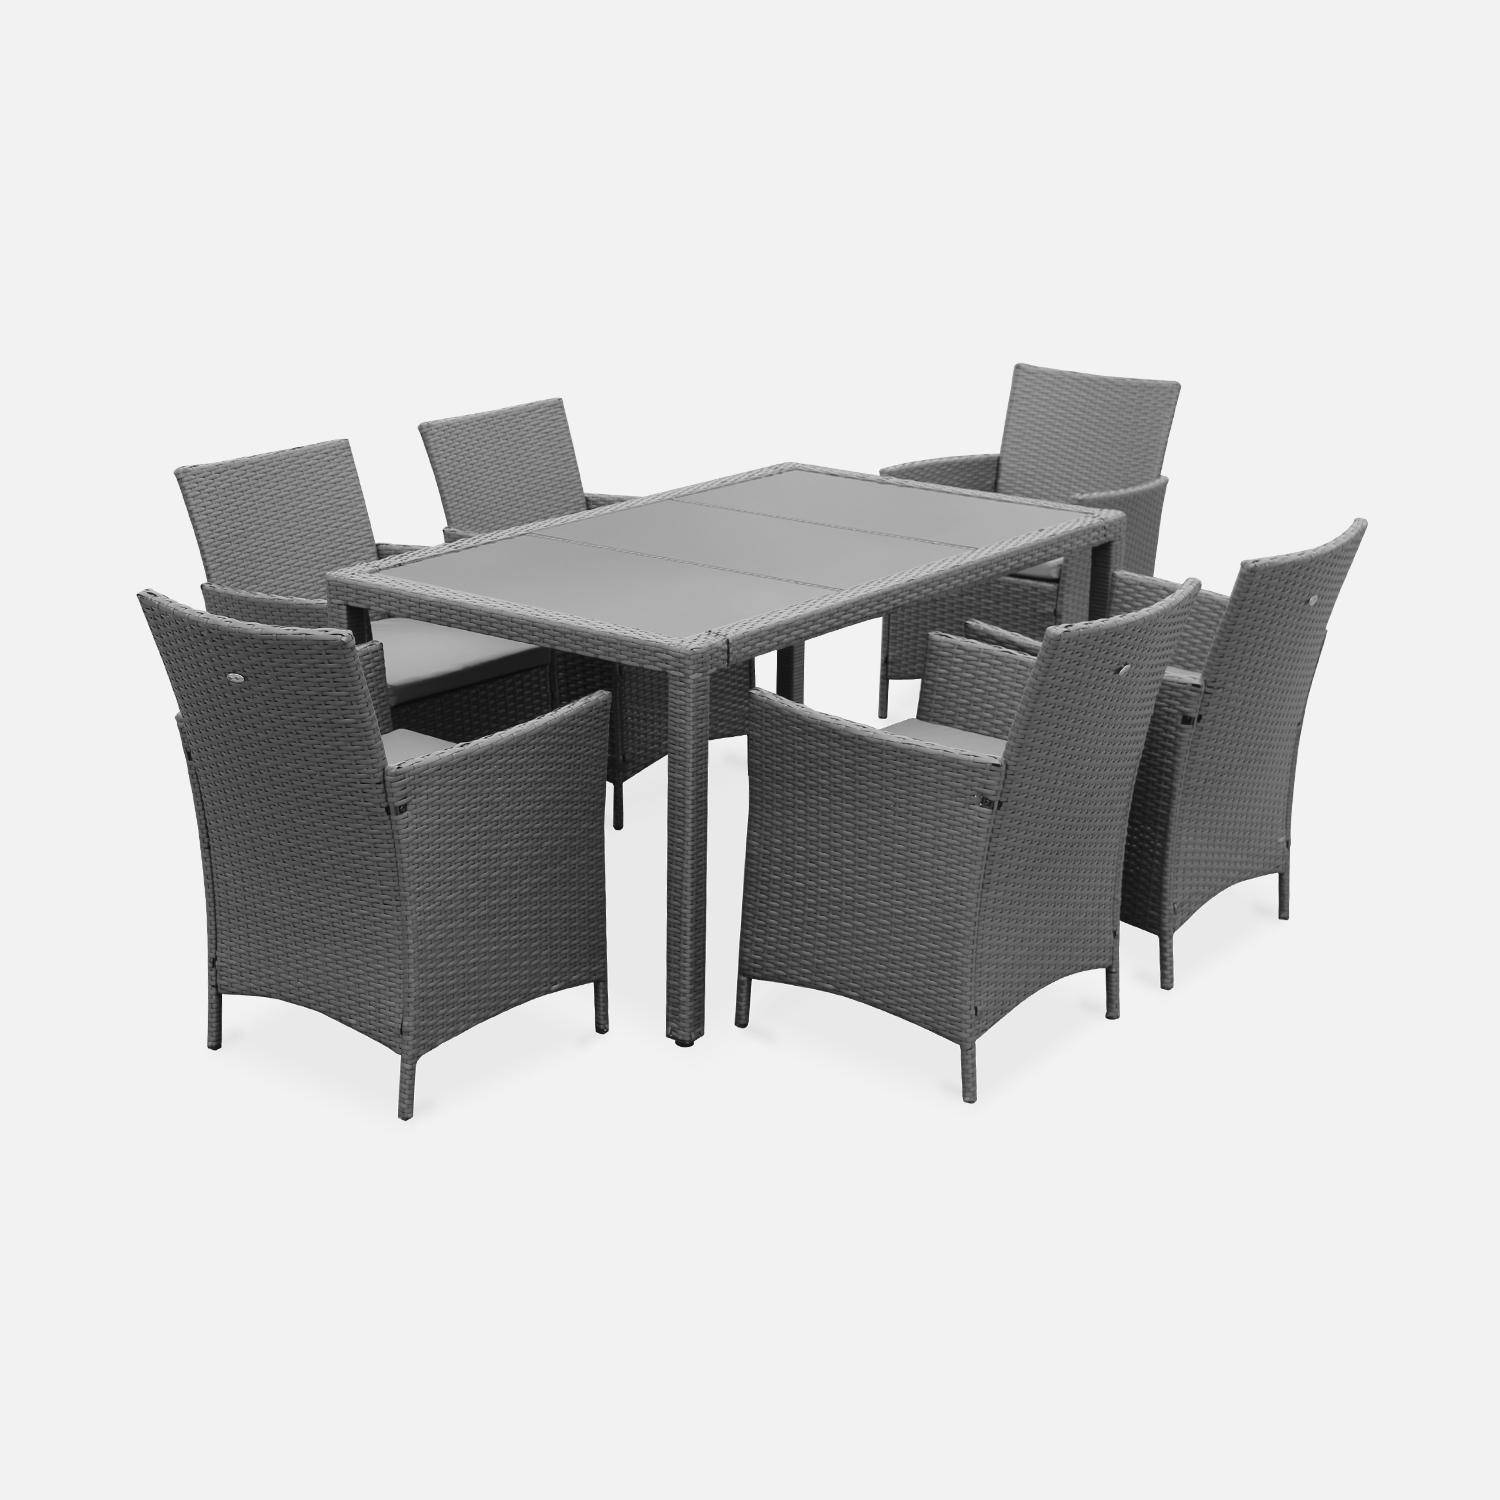 Gartengarnitur 6 Personen - Tavola 6 Grau - Kunststoffrattan, 150 cm Tisch, graue Kissen, 6 Sessel Photo2